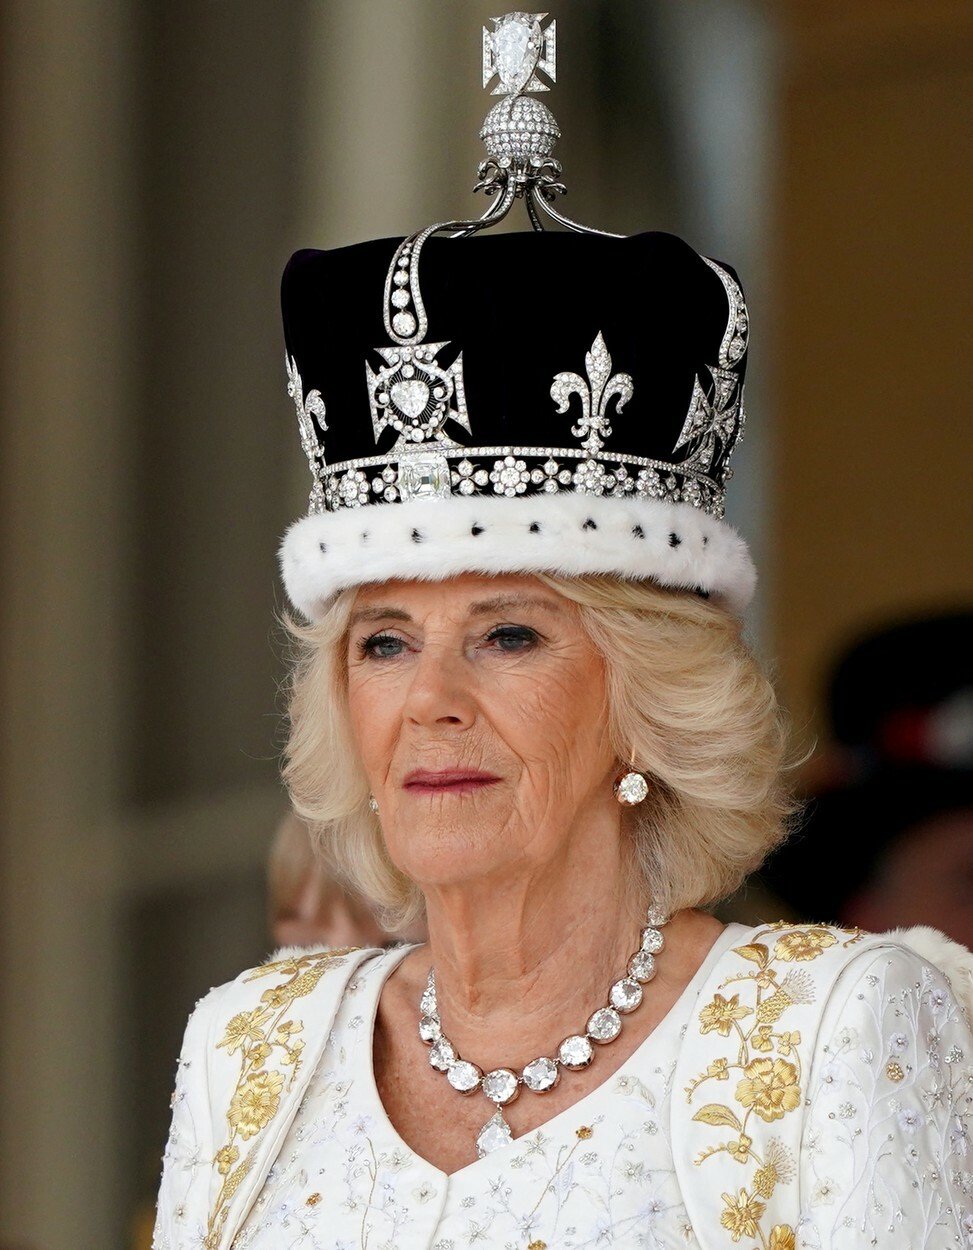 Skrýte symboly korunovačních šatů Camilly: Čím poslala králi Karlovi III. jasný vzkaz?